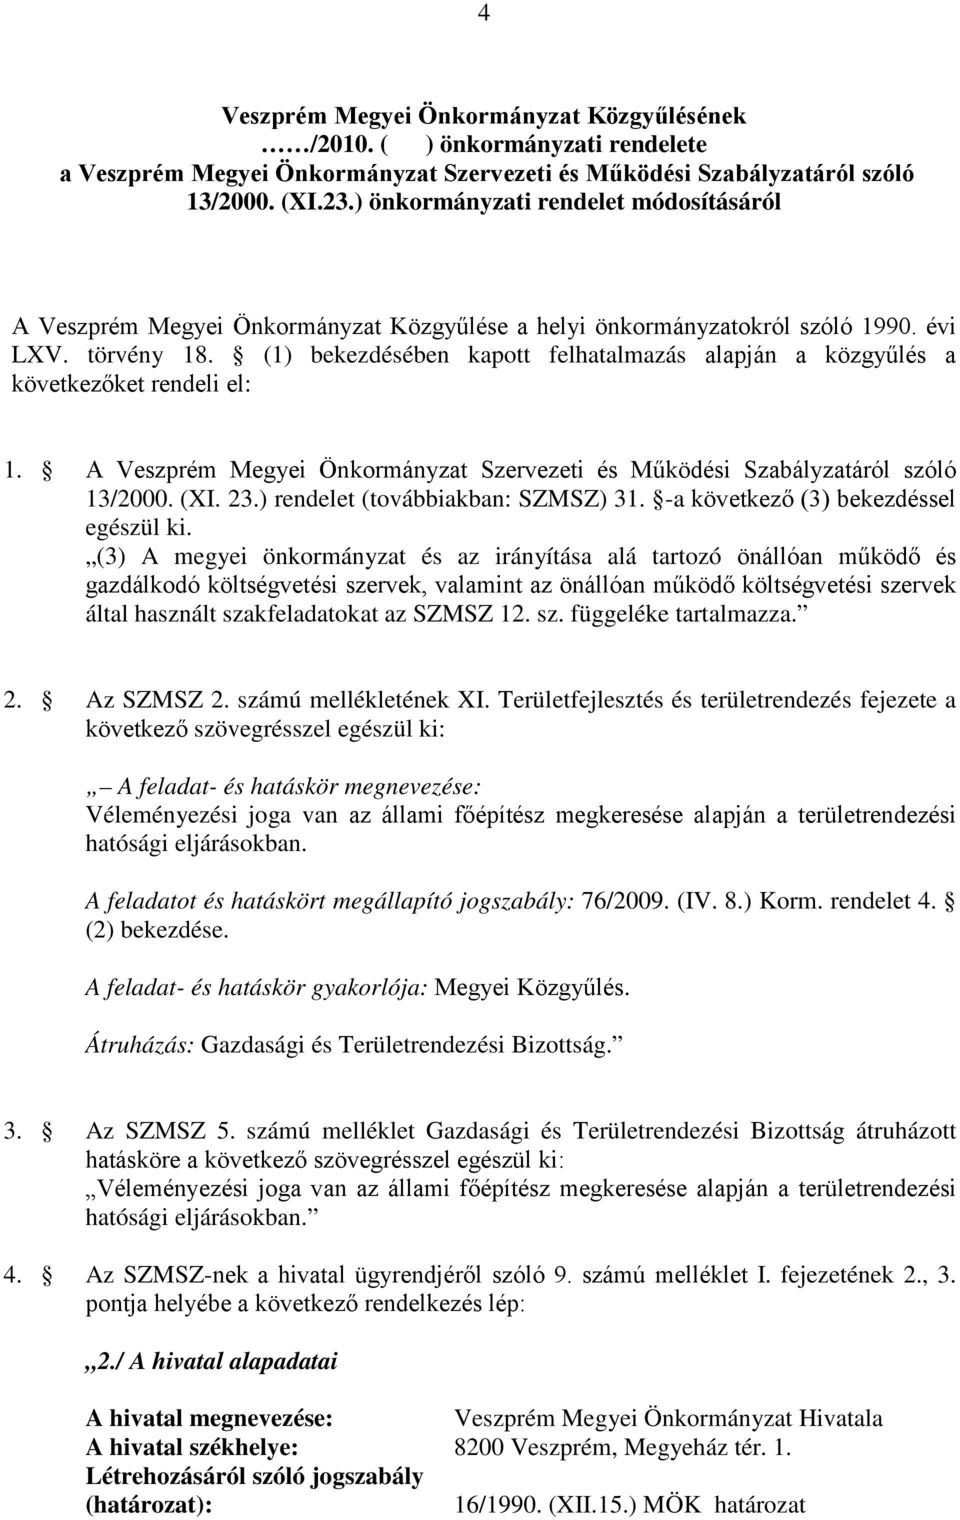 (1) bekezdésében kapott felhatalmazás alapján a közgyűlés a következőket rendeli el: 1. A Veszprém Megyei Önkormányzat Szervezeti és Működési Szabályzatáról szóló 13/2000. (XI. 23.